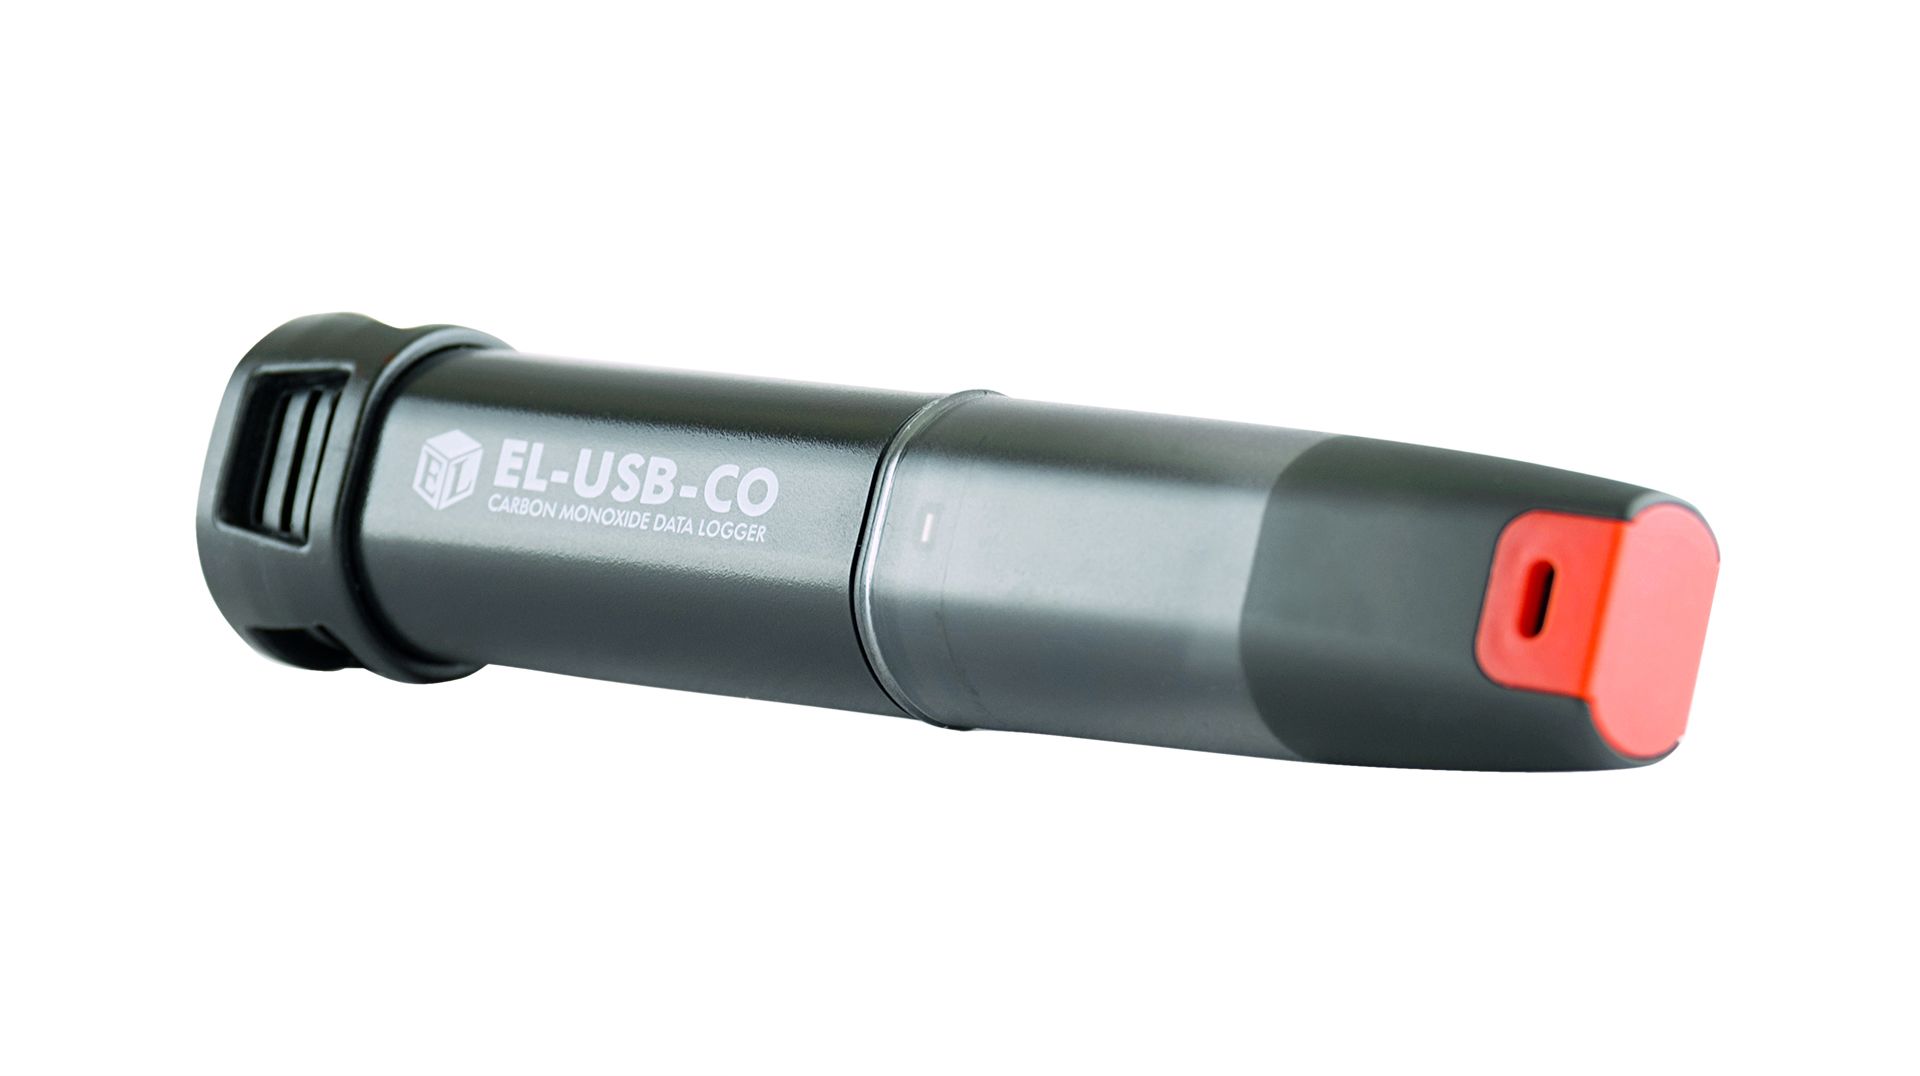 Lascar EL-USB-CO300 Carbon Monoxide Data Logger, 1 Input Channel(s), Battery-Powered